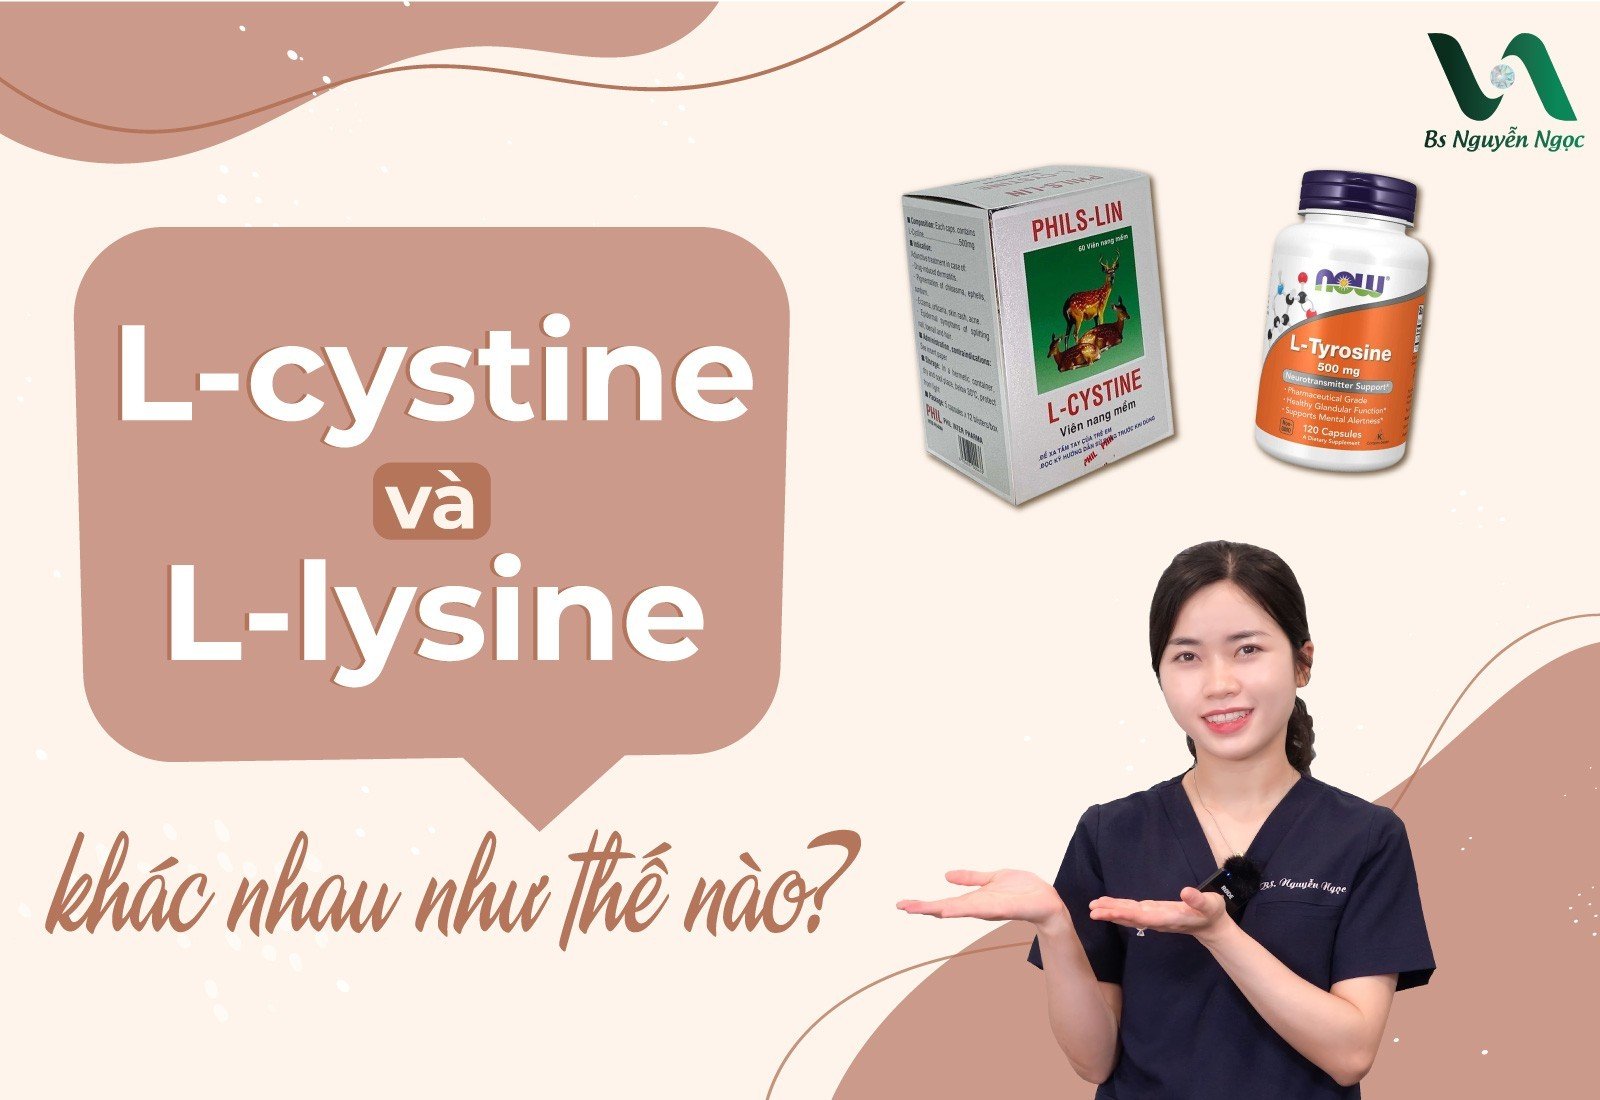 Tìm hiểu l-cystine và l-lysine khác nhau như thế nào để hiểu rõ hơn về 2 loại chất này